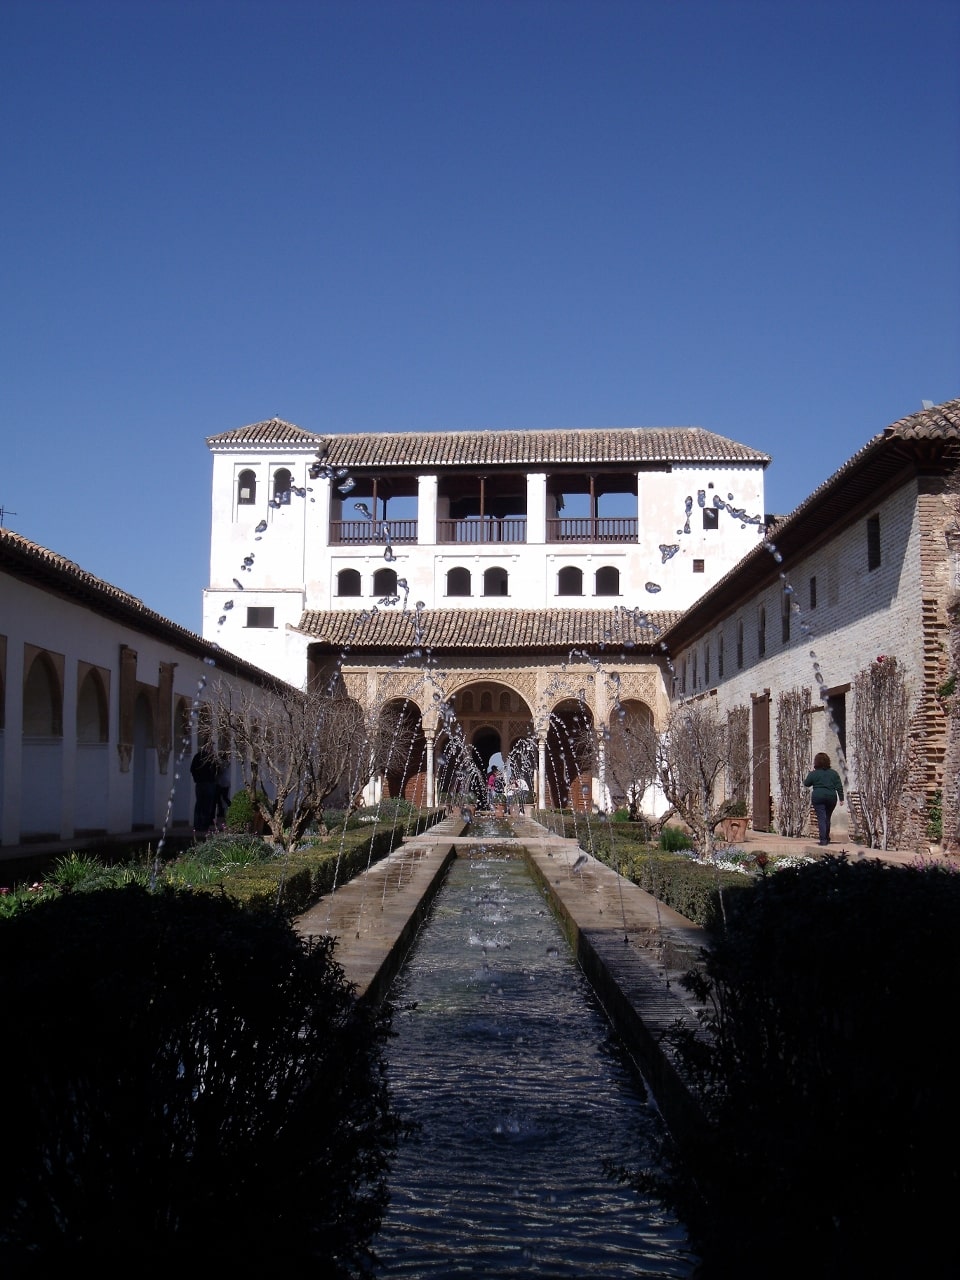 Alhambra (interactivo) - Generalife